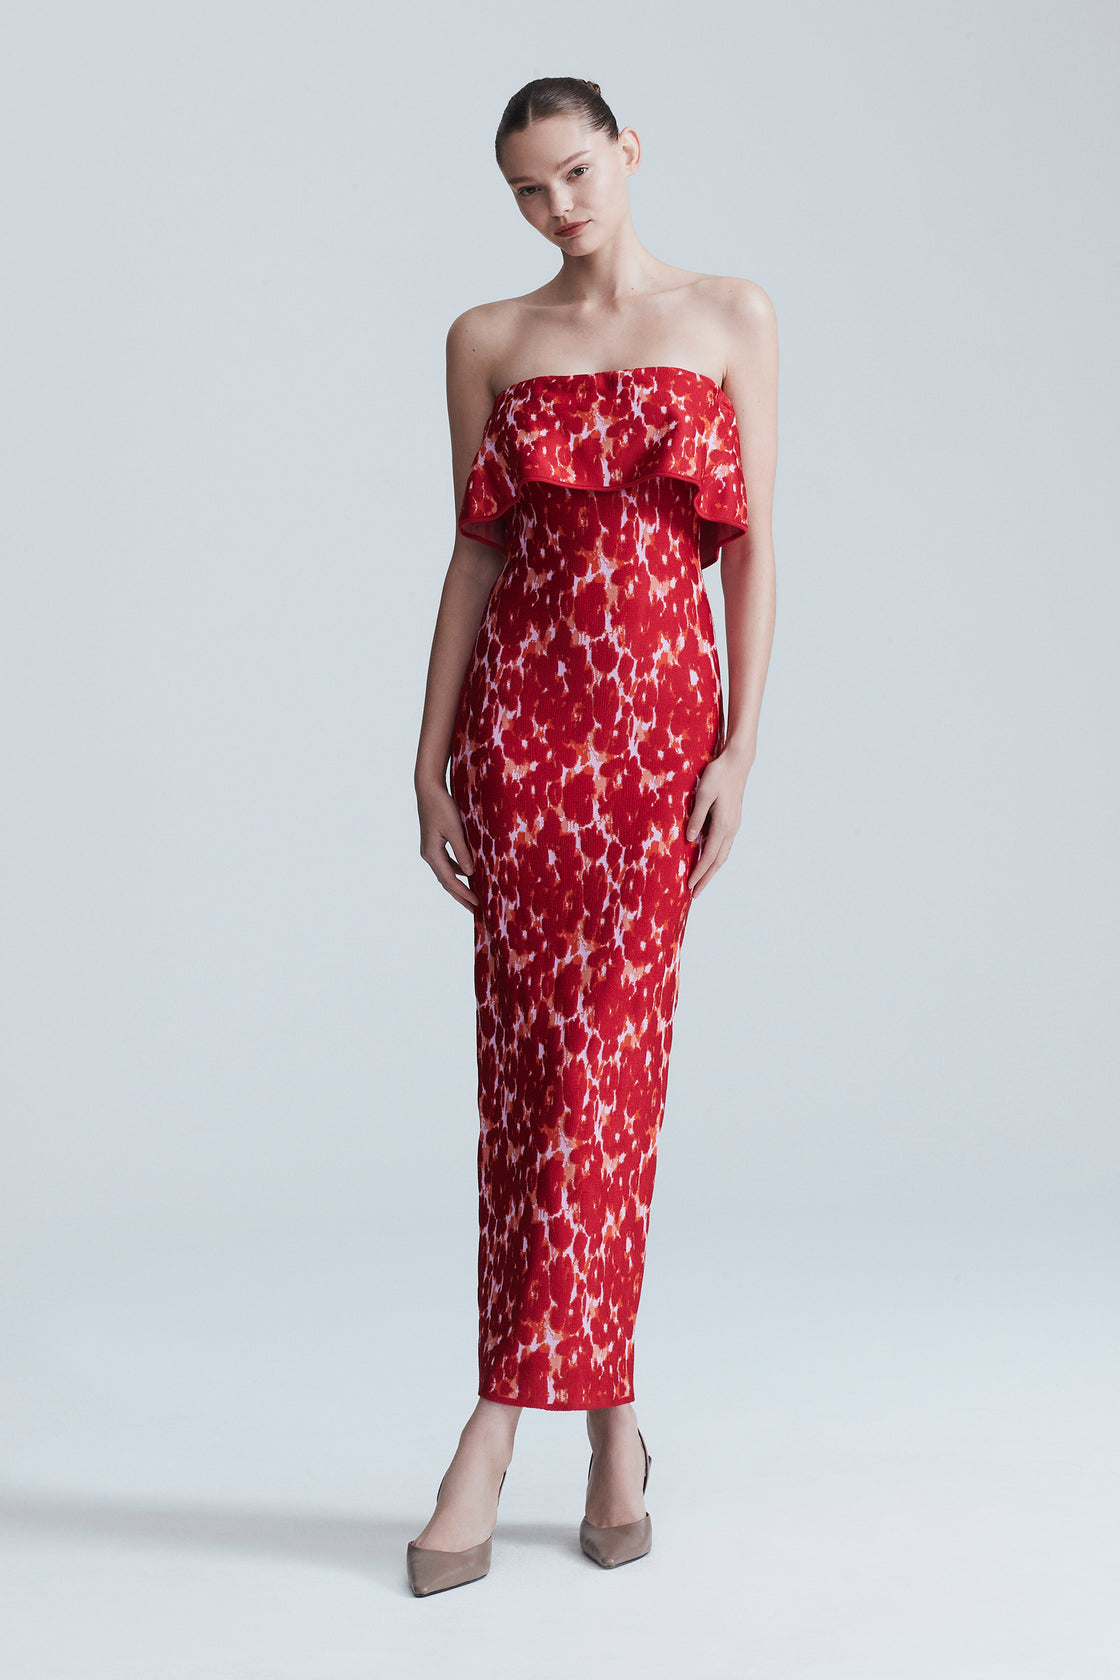 Floral Jacquard Knit Alexandra Dress – Lela Rose